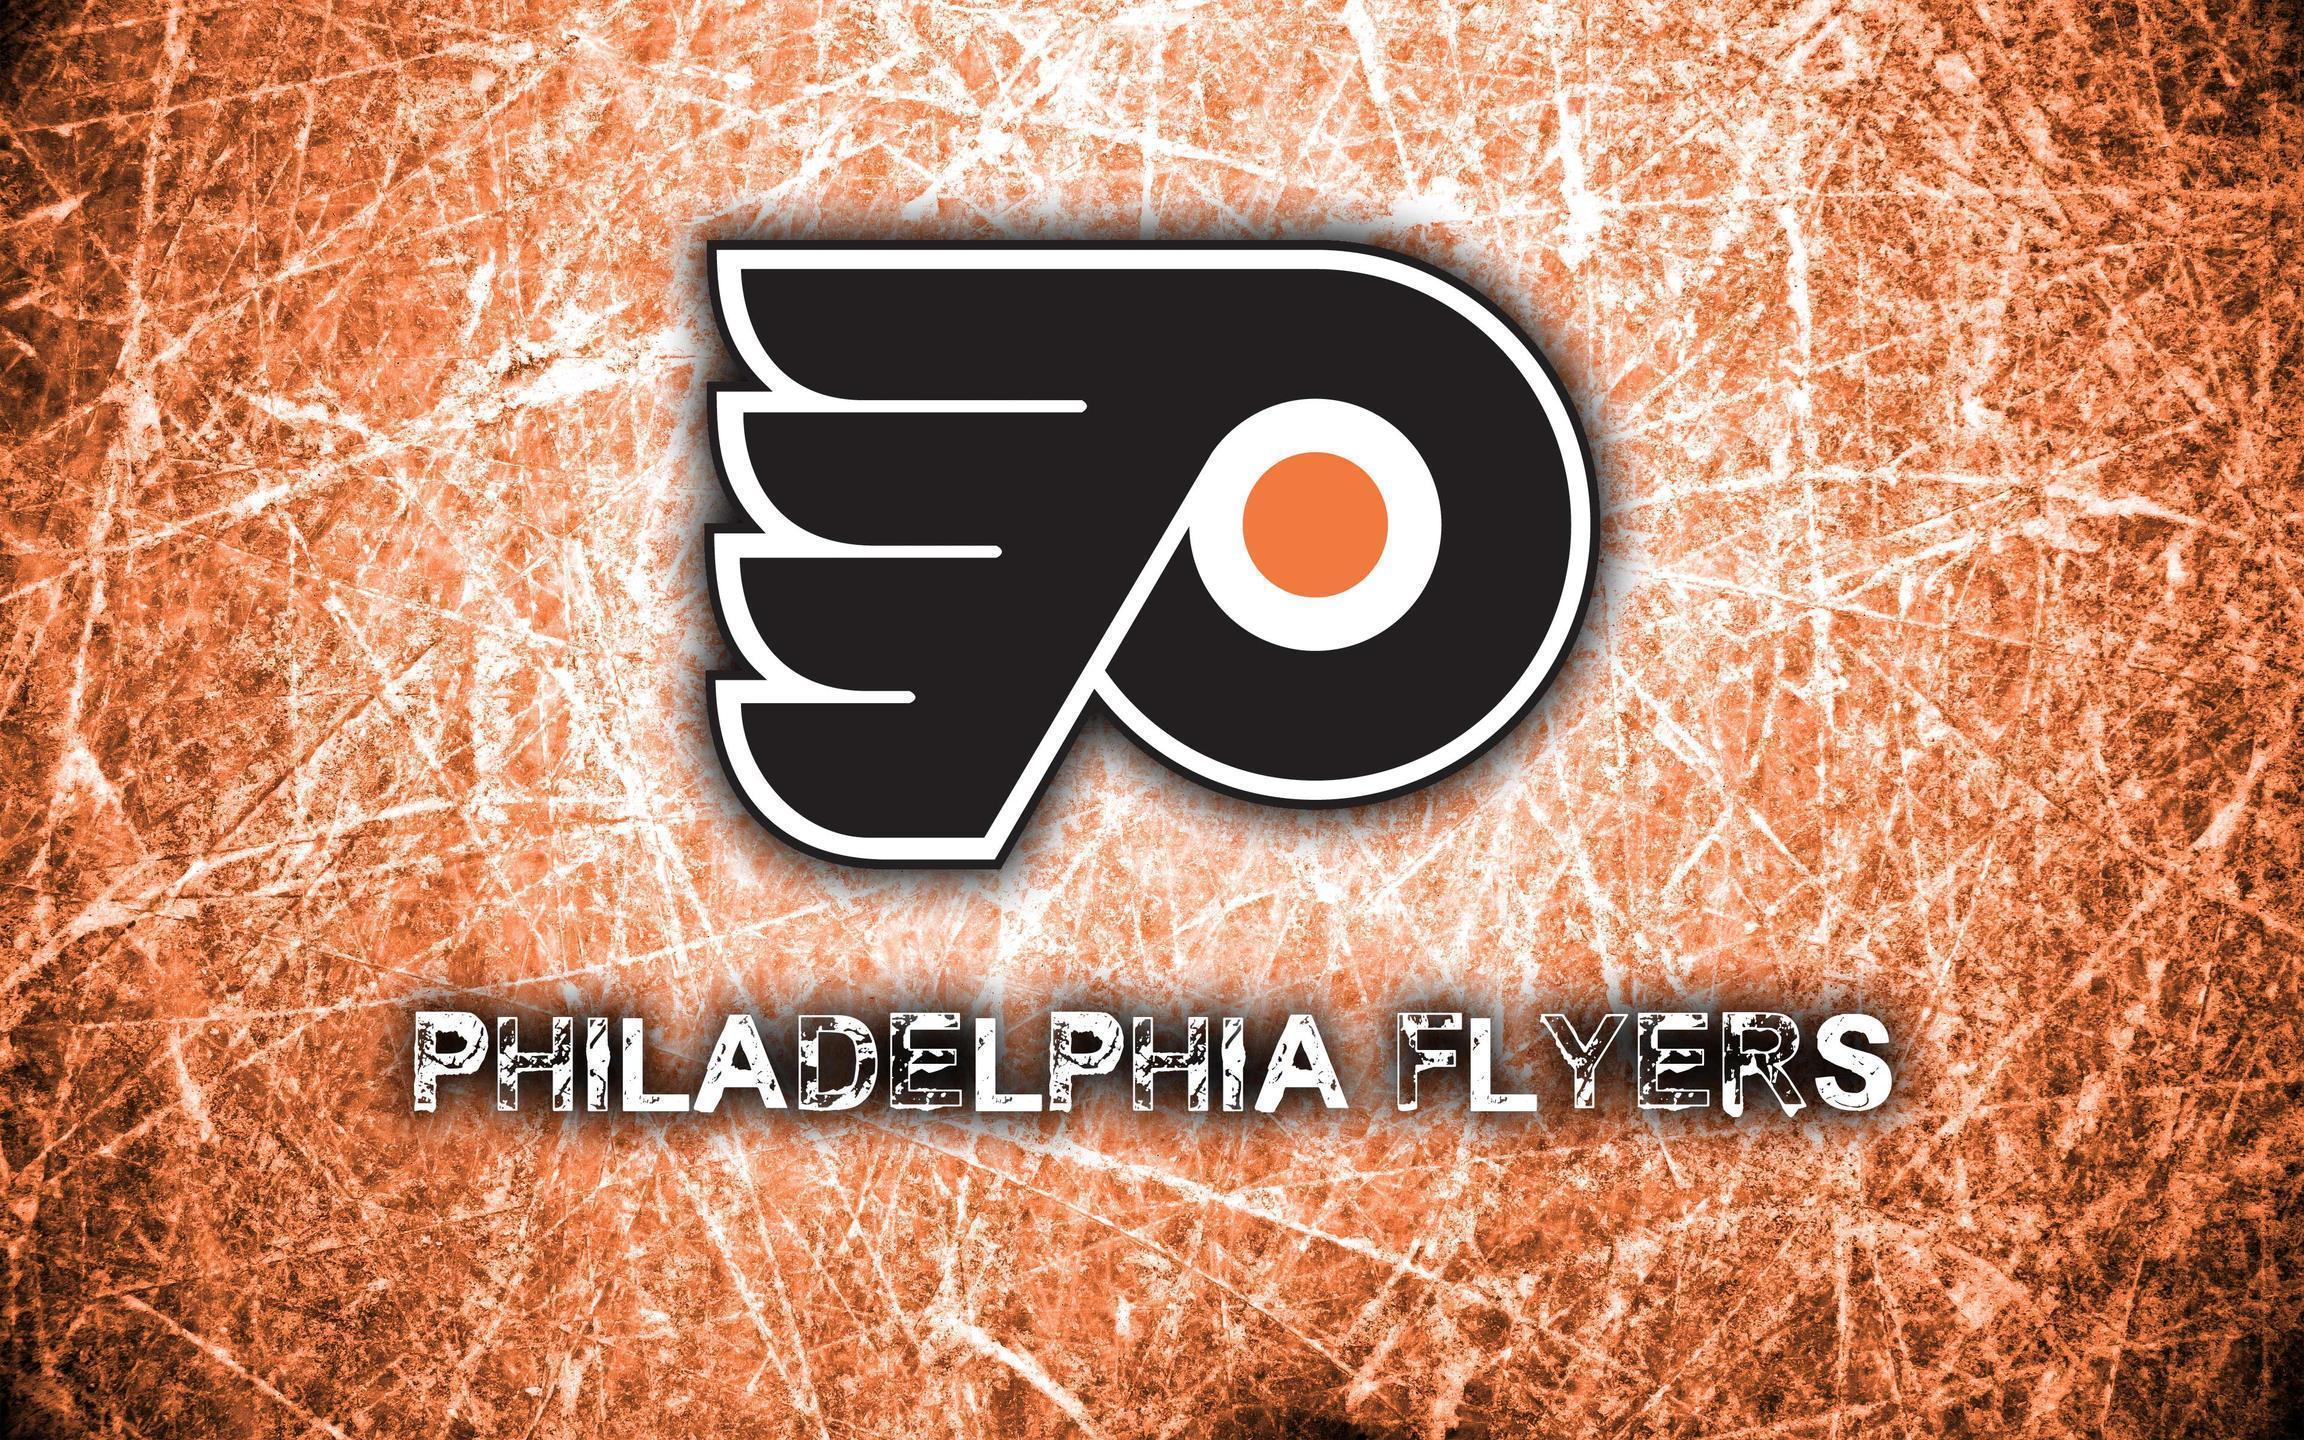 Philadelphia Flyers 2014 Logo Wallpaper Wide or HD